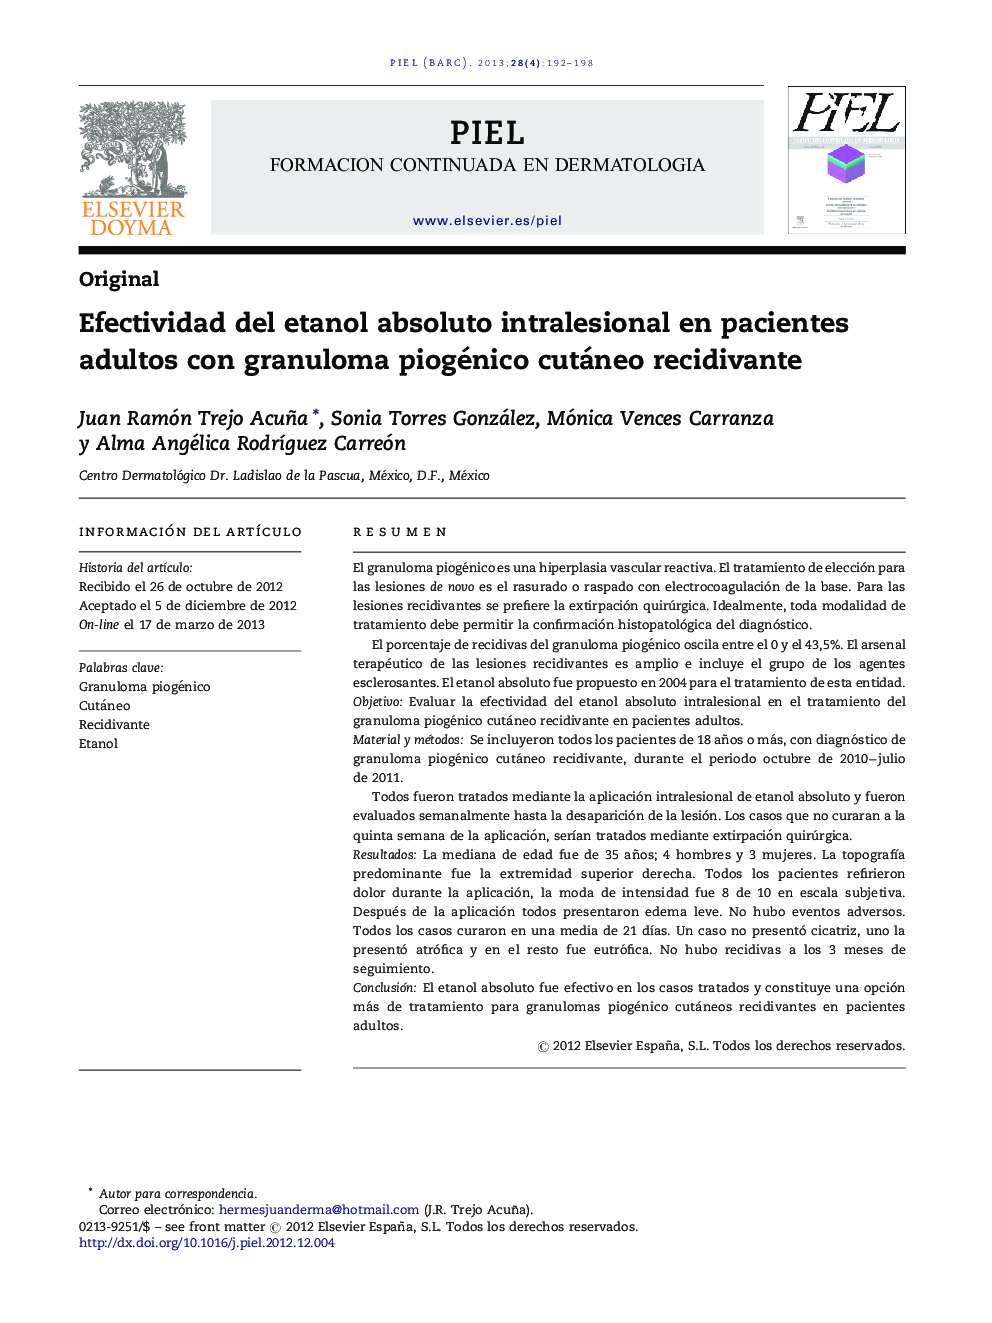 Efectividad del etanol absoluto intralesional en pacientes adultos con granuloma piogénico cutáneo recidivante